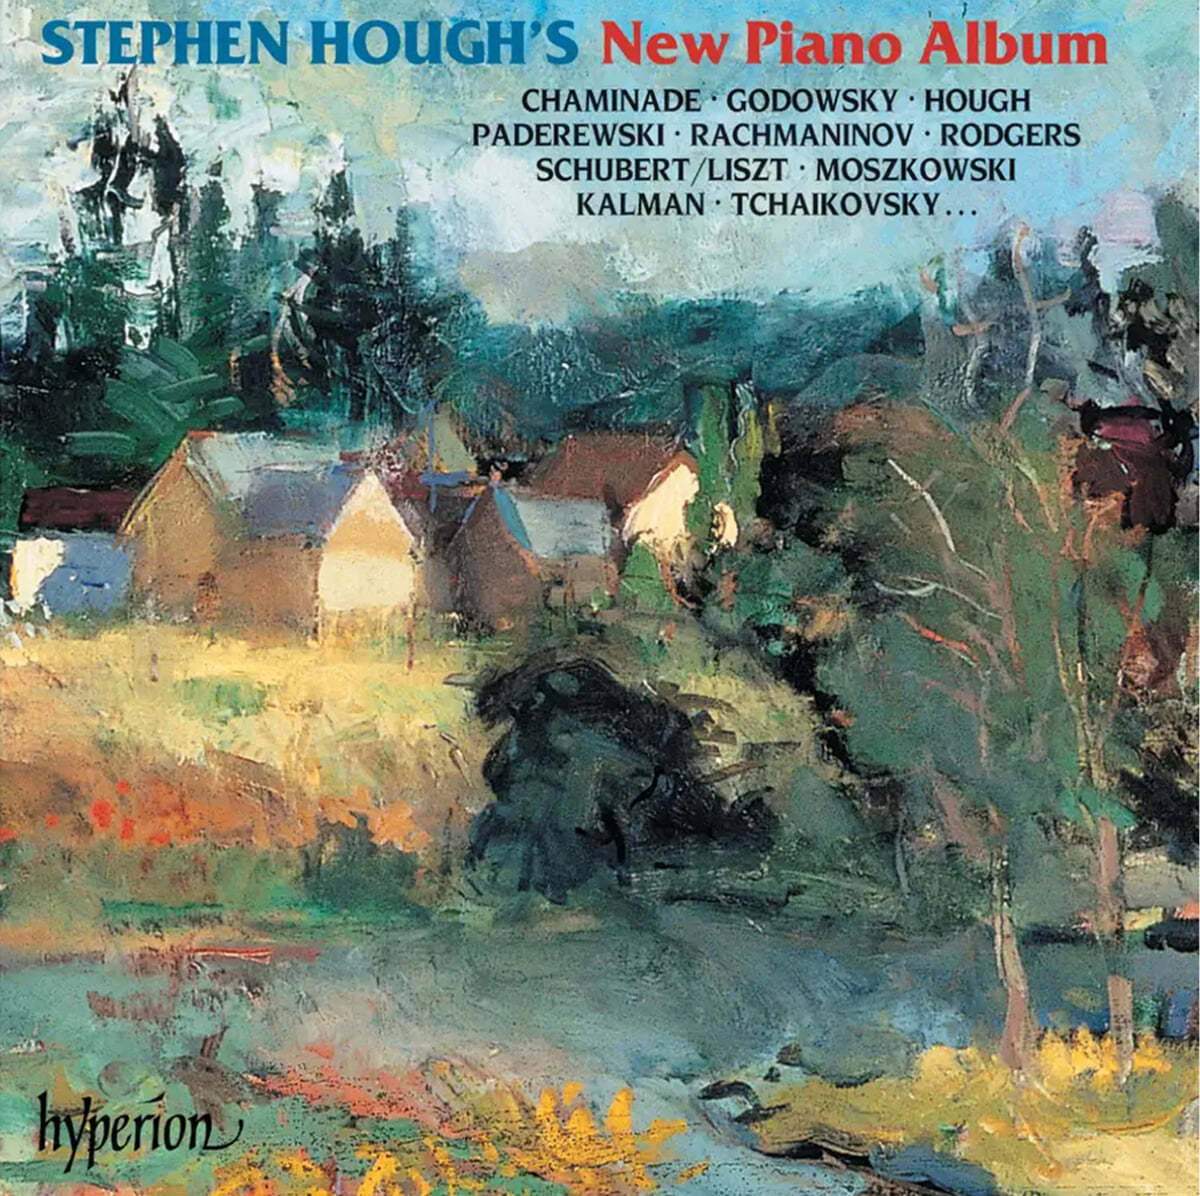 Stephen Hough 슈베르트 / 리스트 / 샤미나데 / 차이코프스키 (New Piano Album)